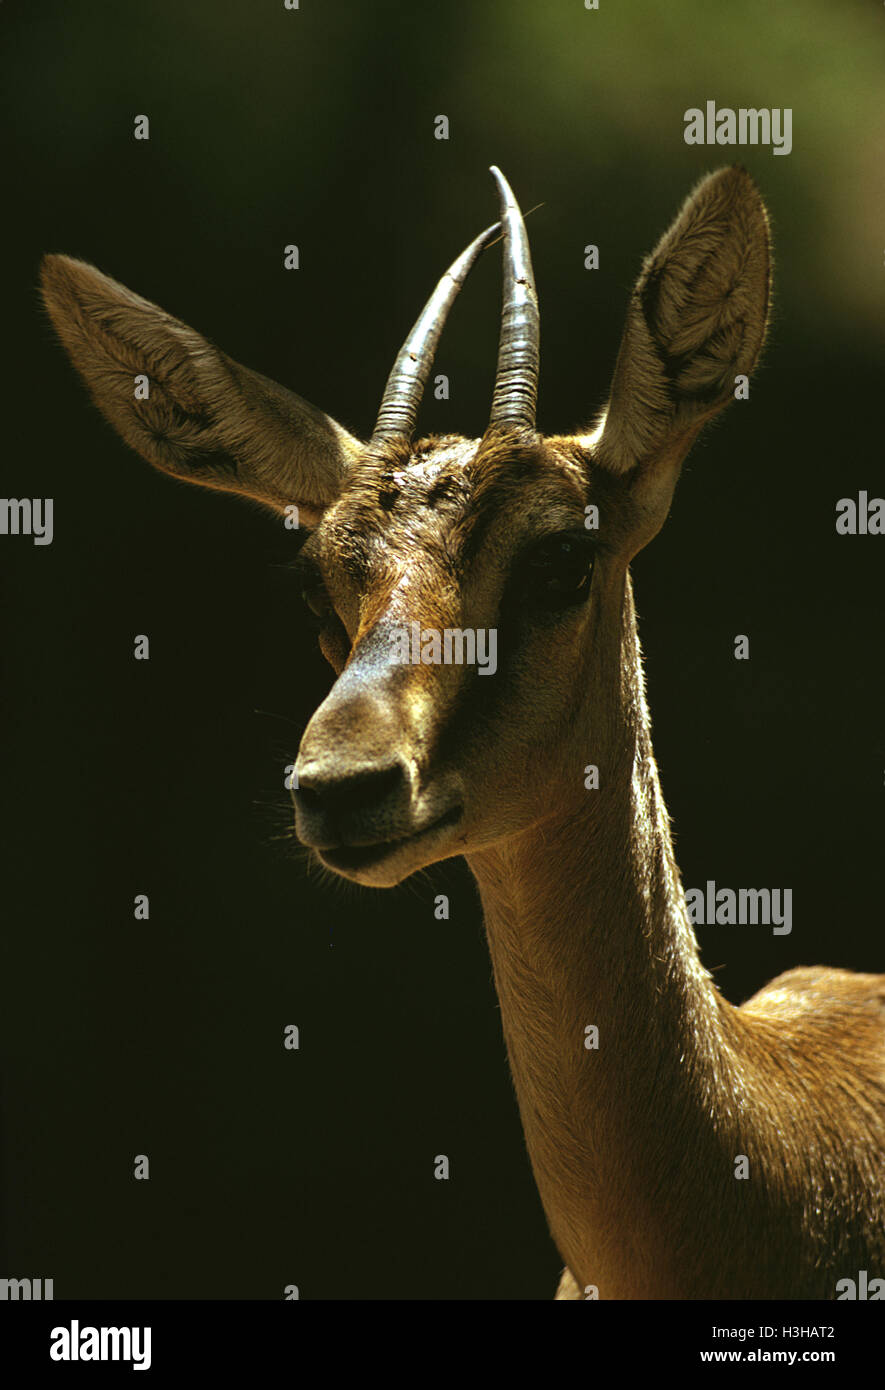 Mountain gazelle (Gazella gazella) Stock Photo